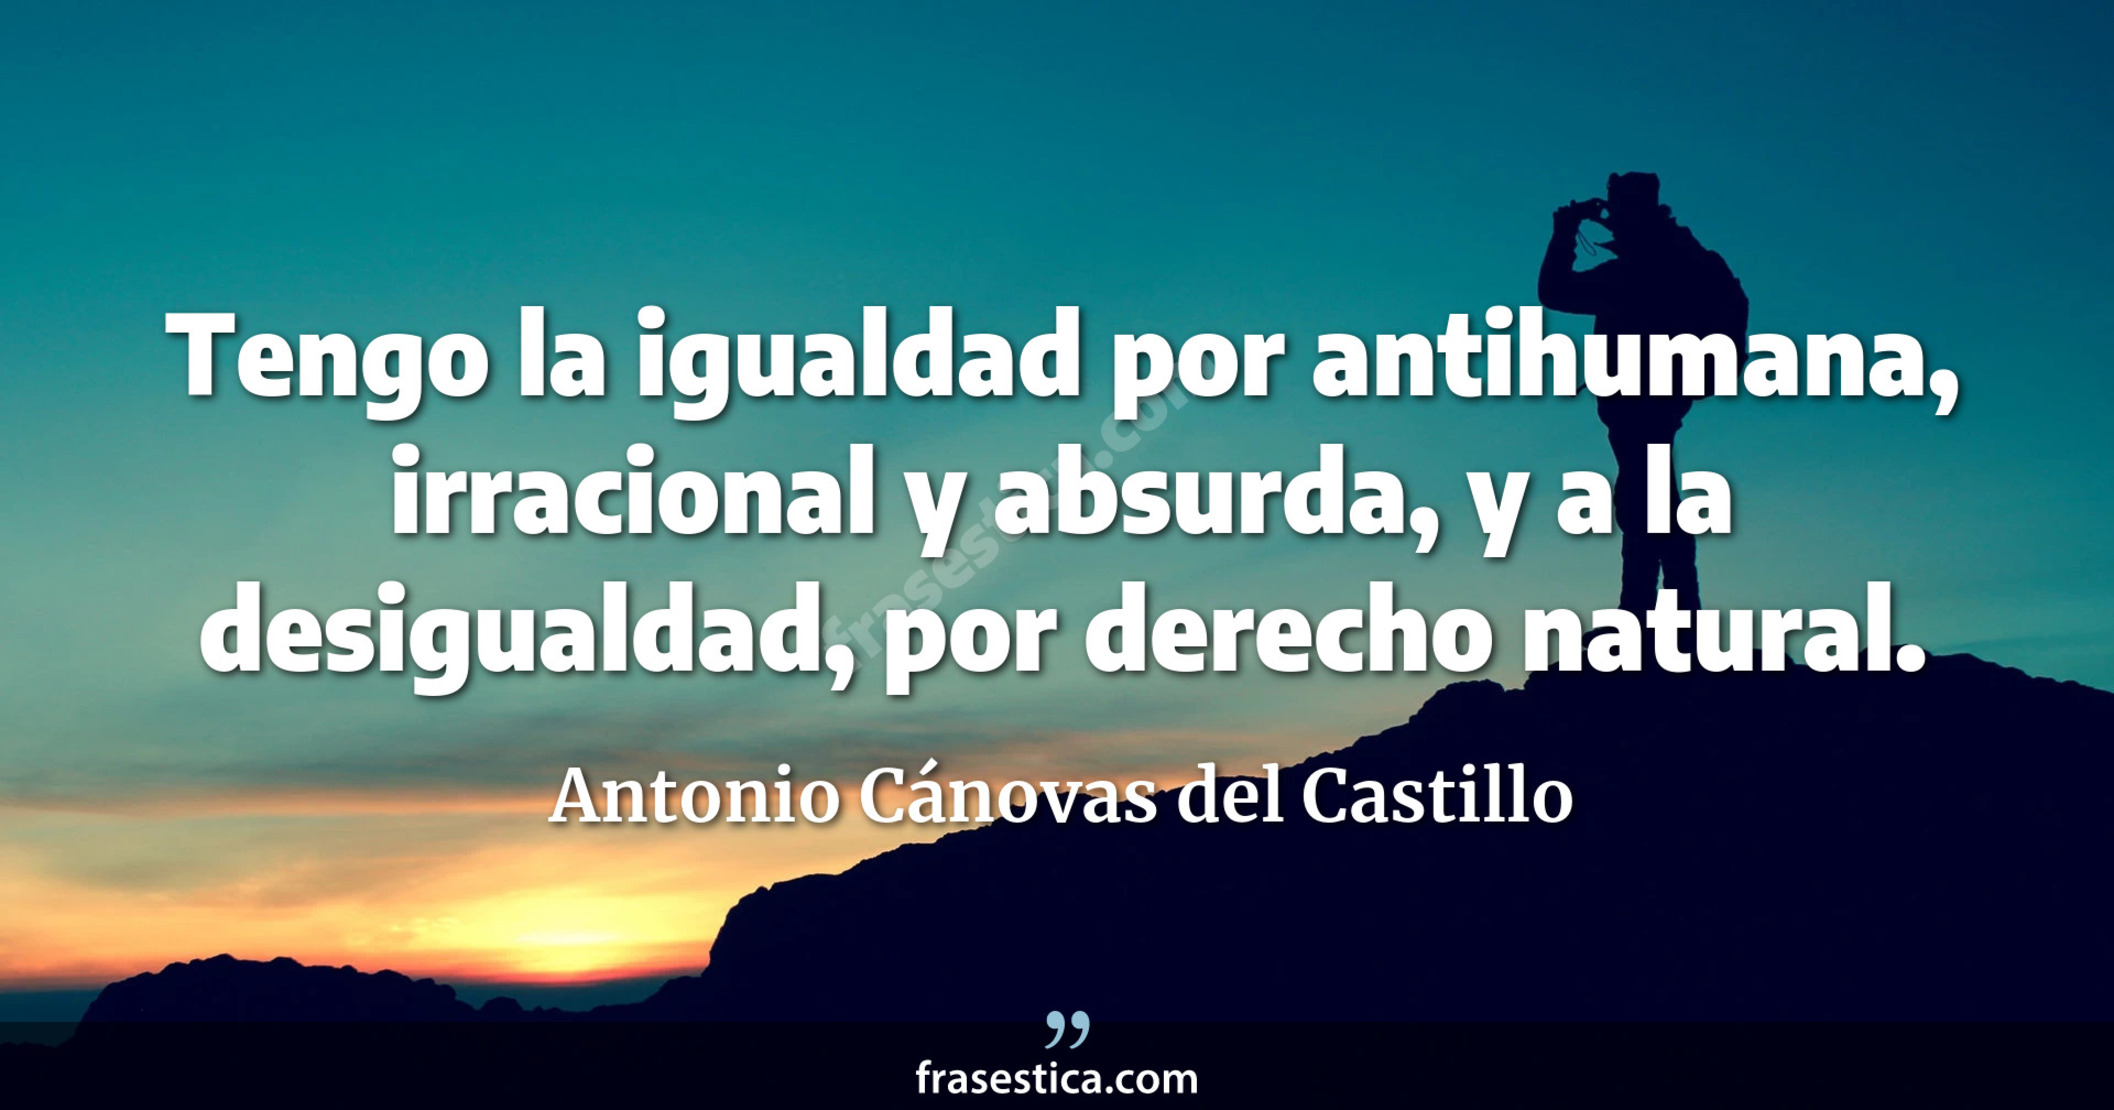 Tengo la igualdad por antihumana, irracional y absurda, y a la desigualdad, por derecho natural. - Antonio Cánovas del Castillo